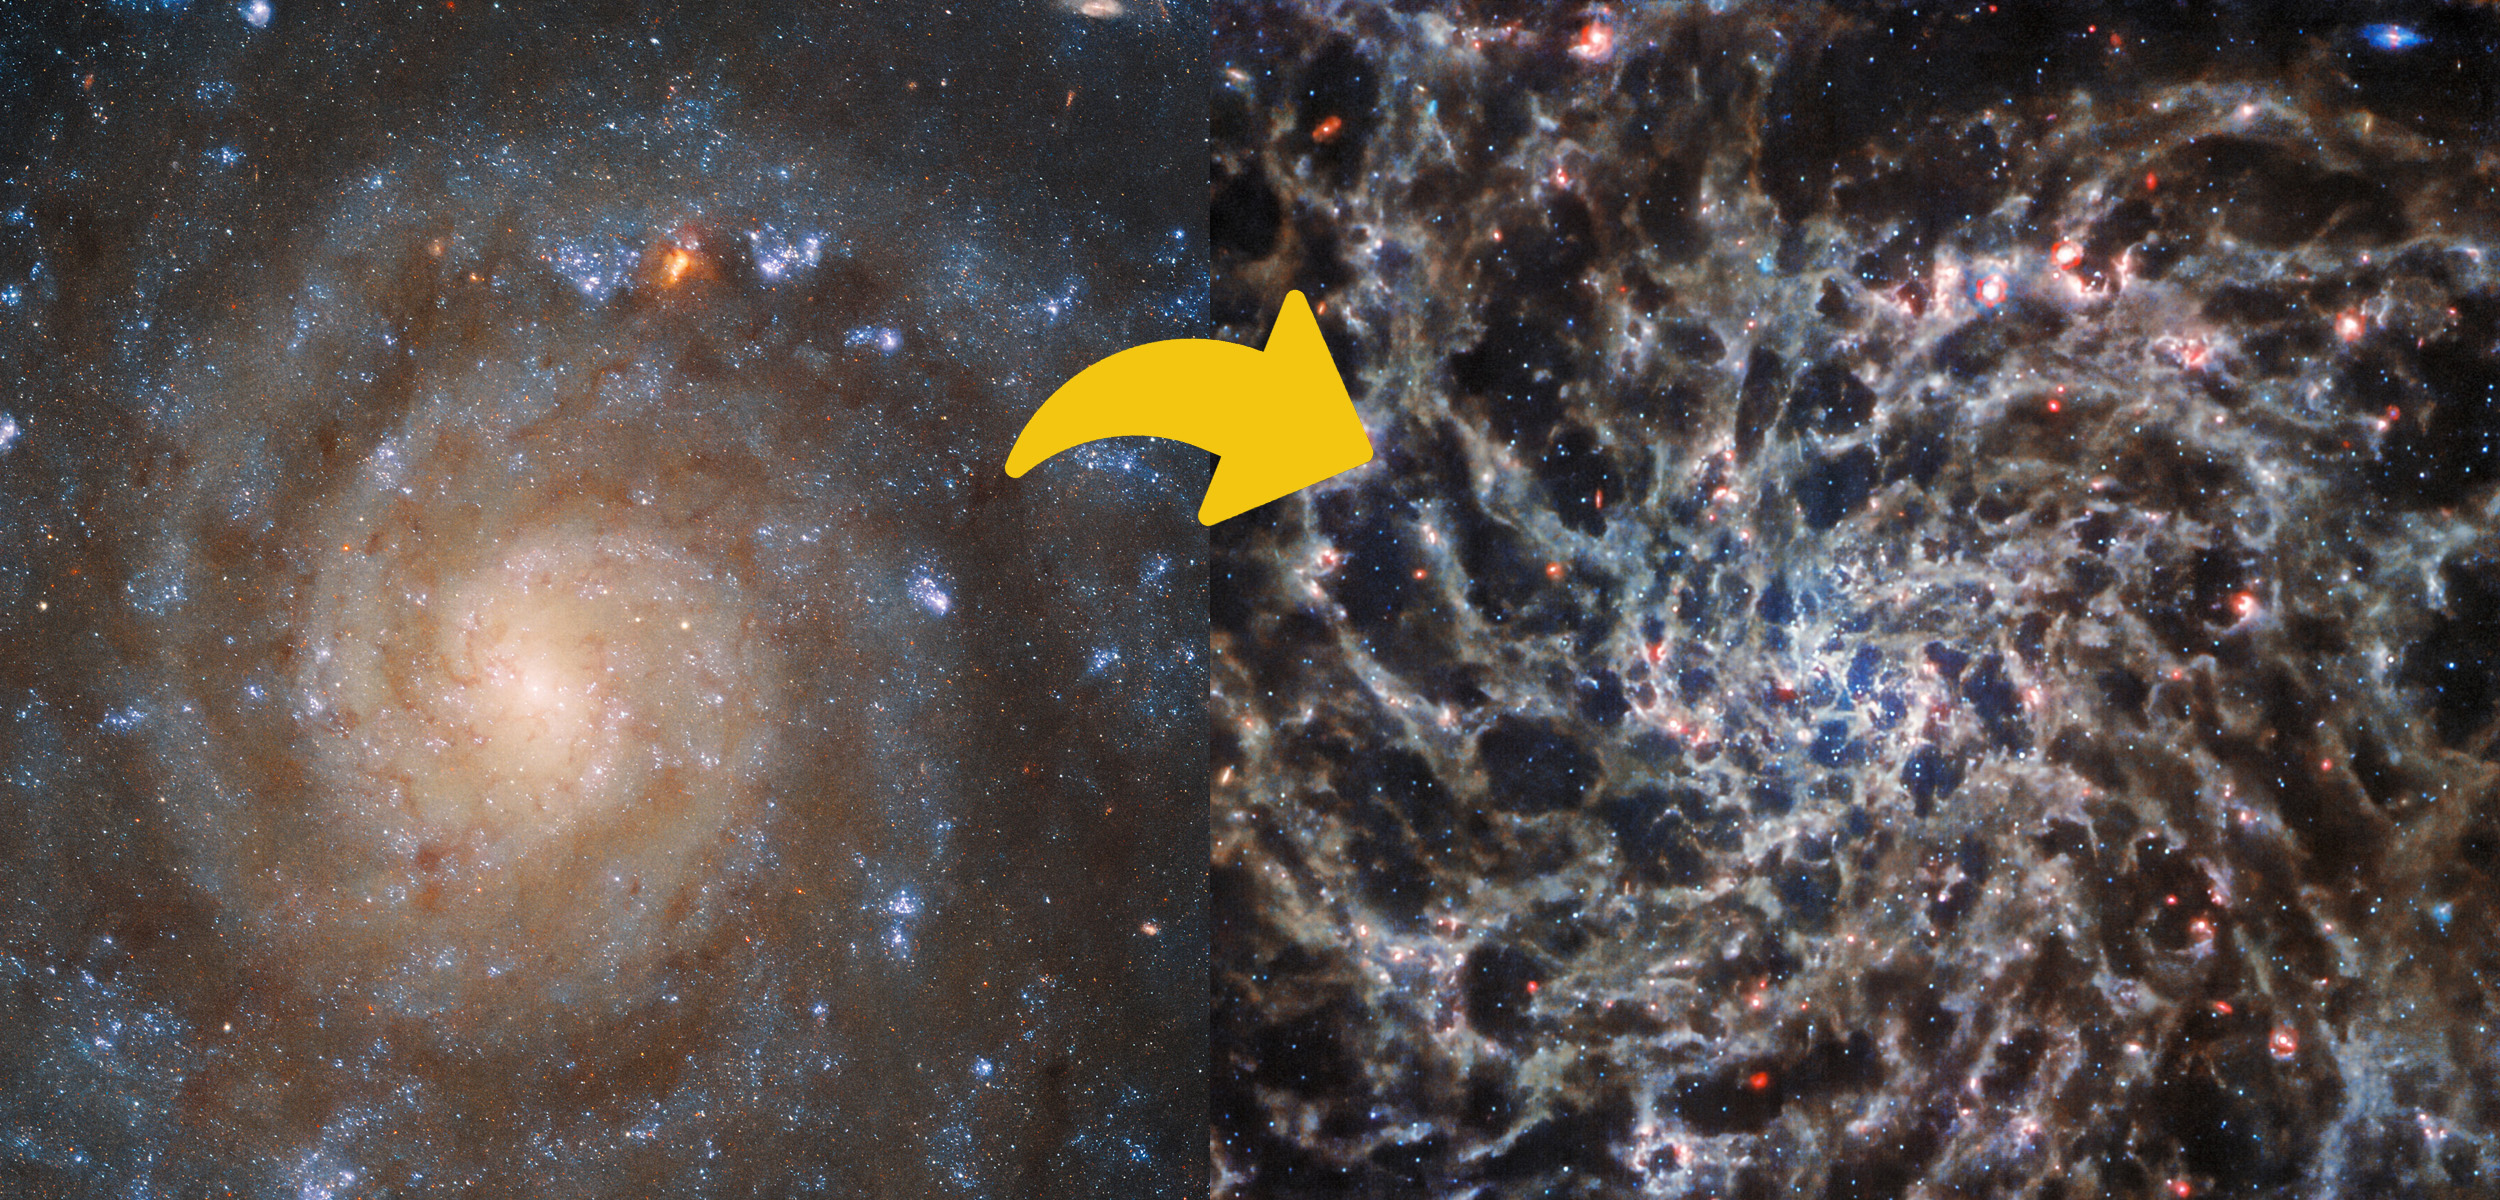 Hubble and James Webb view of IC 5332. Image Credit: NASA/ESA.